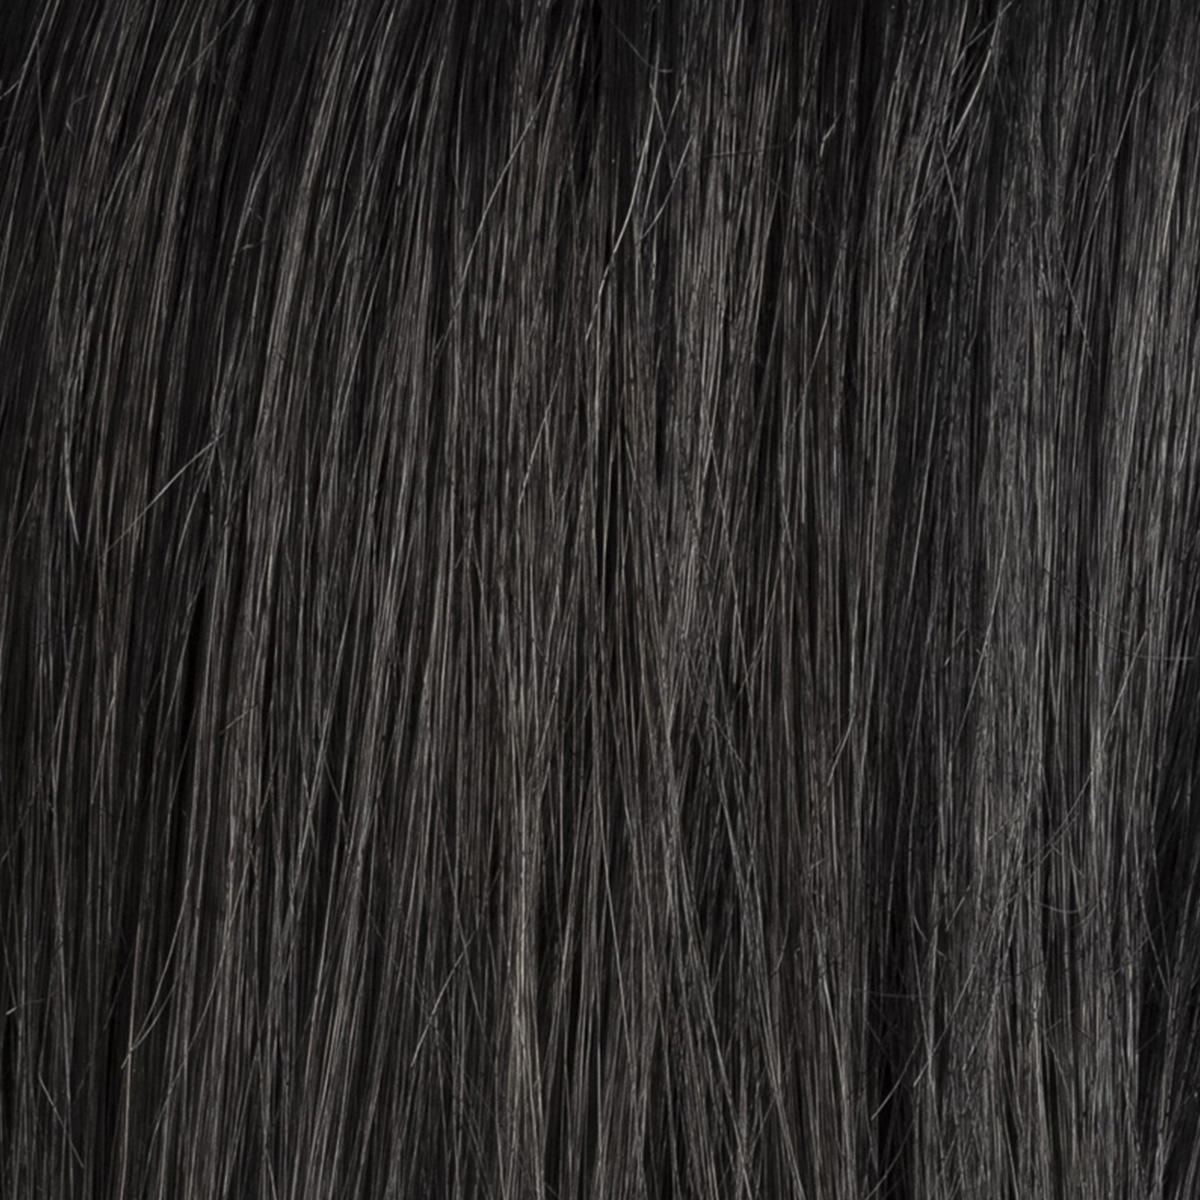 Ellen Wille Synthetic hair wig Carrie ebony black - 2